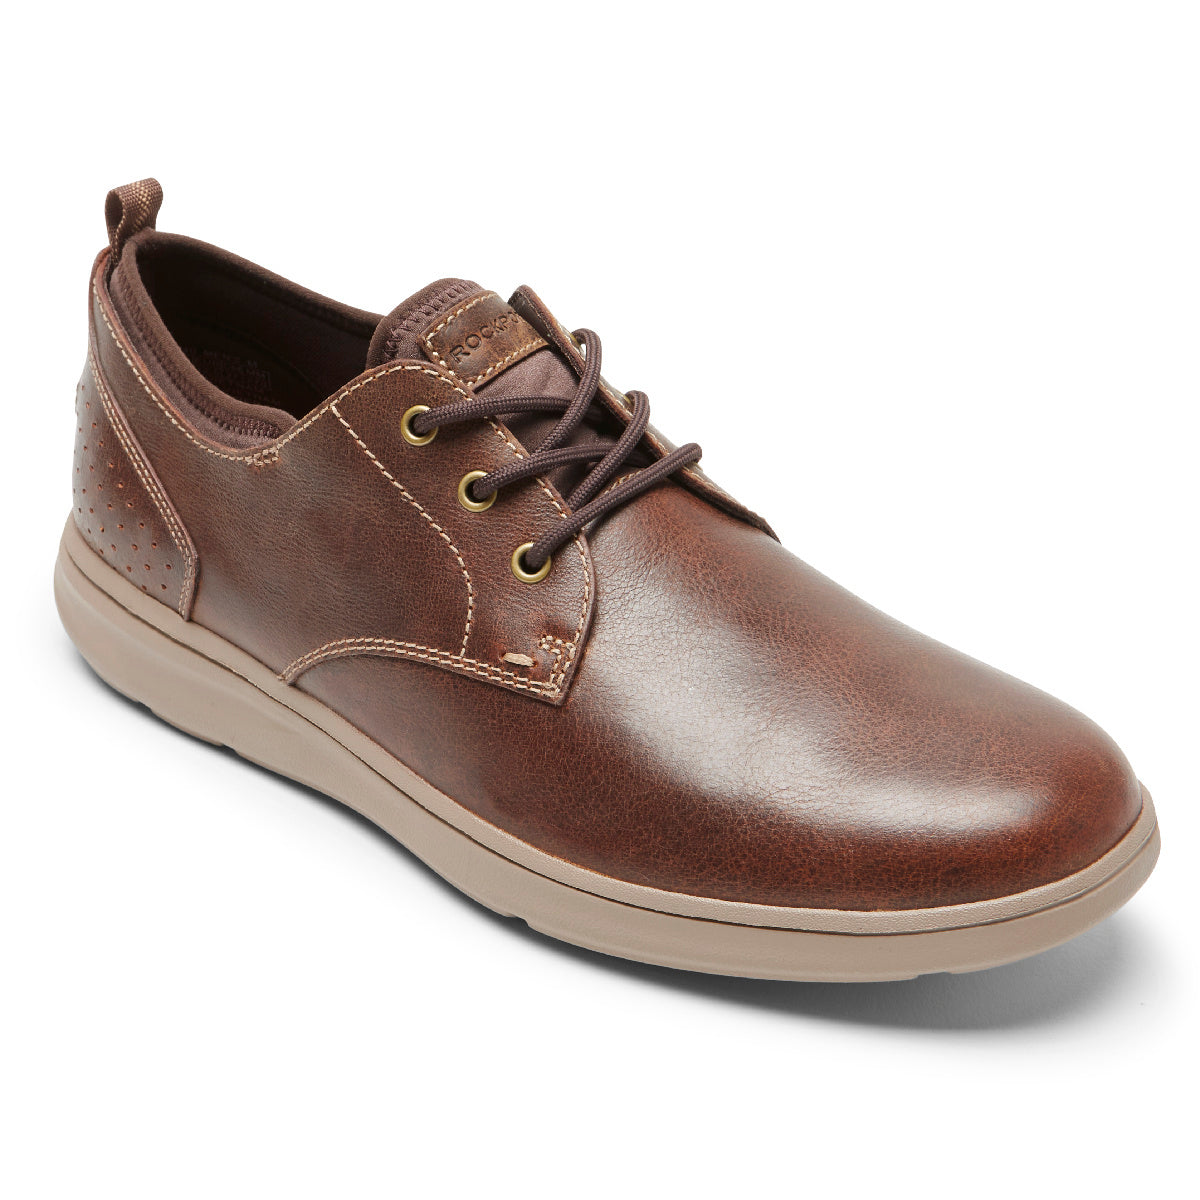 Men's Zaden Plain Toe Oxford (Sudan Brown Leather)